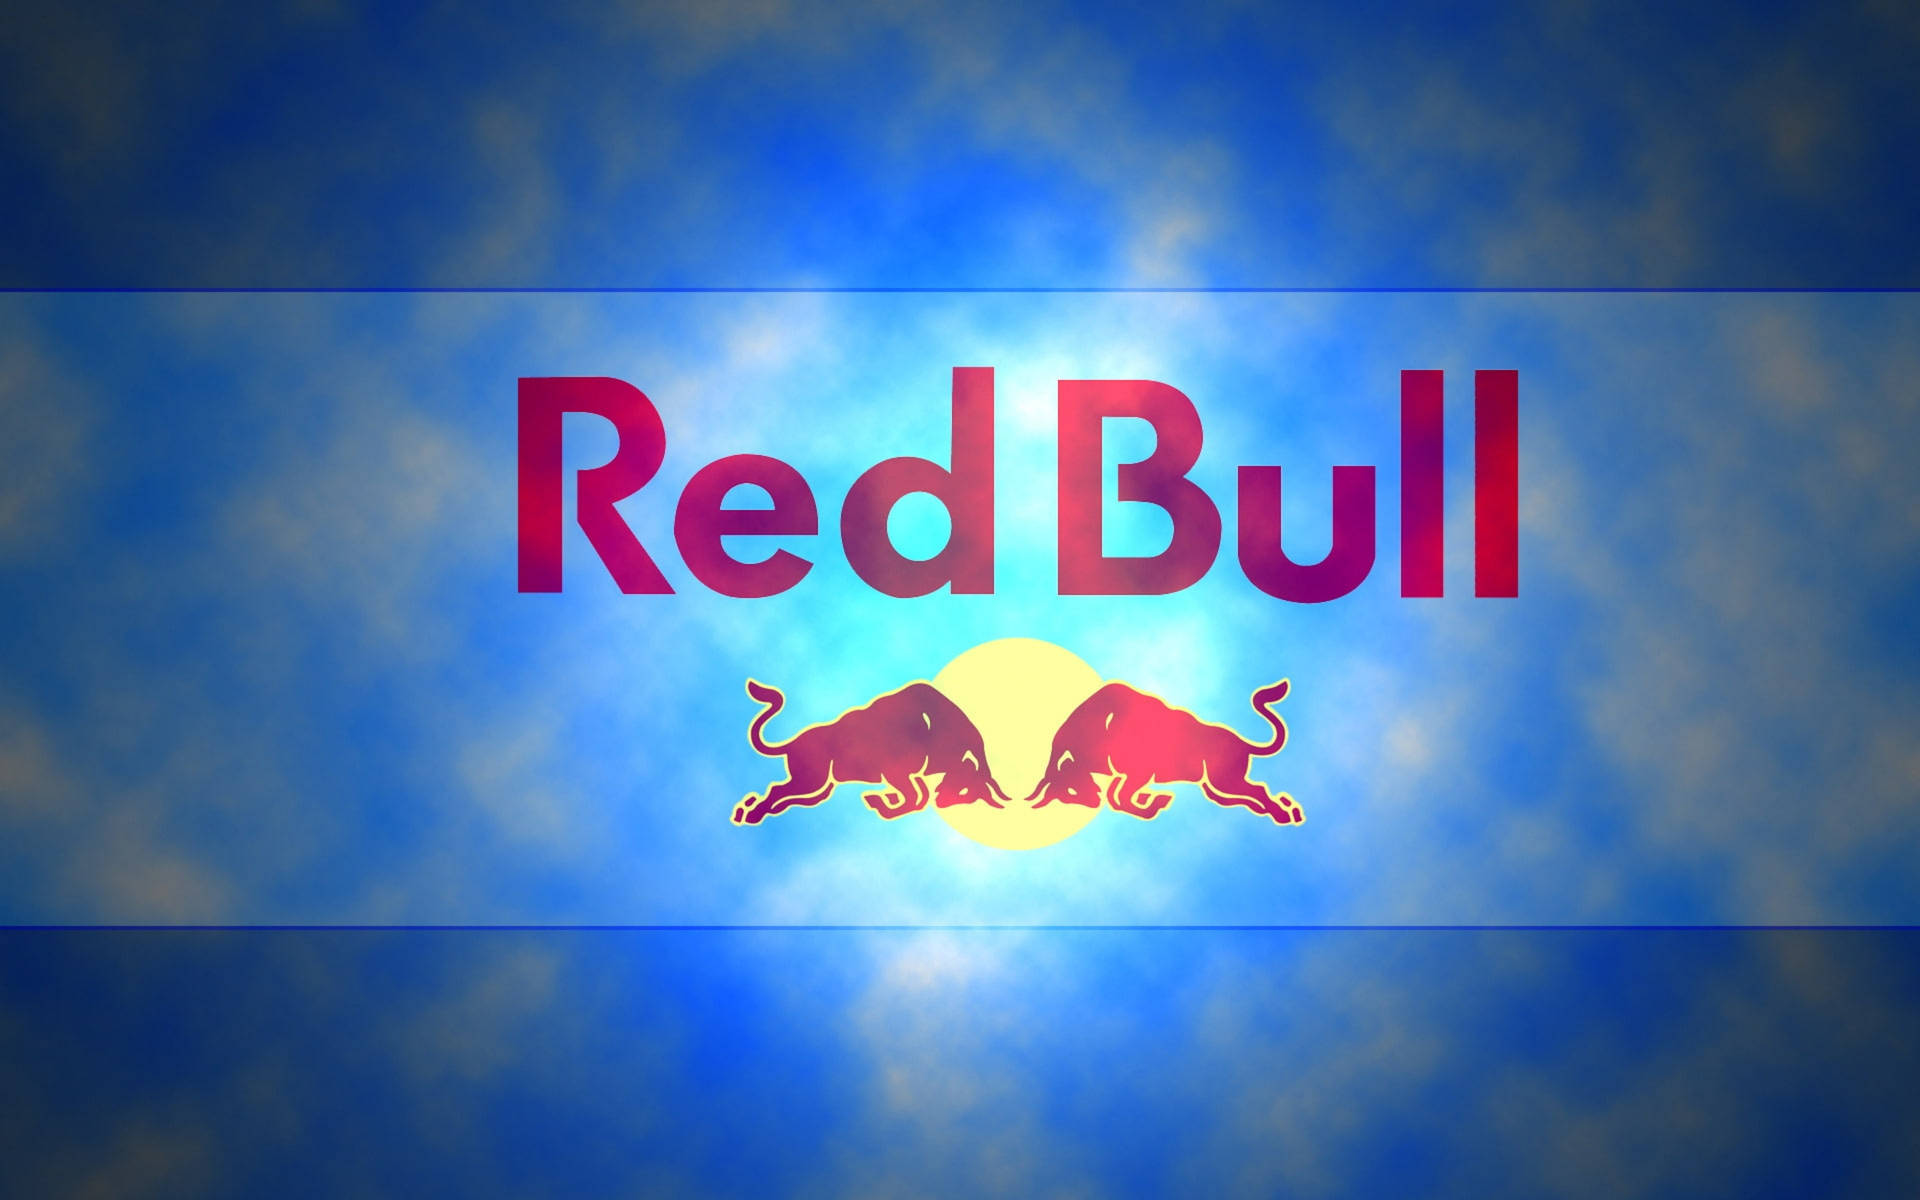 Red Bull Neon Wallpaper